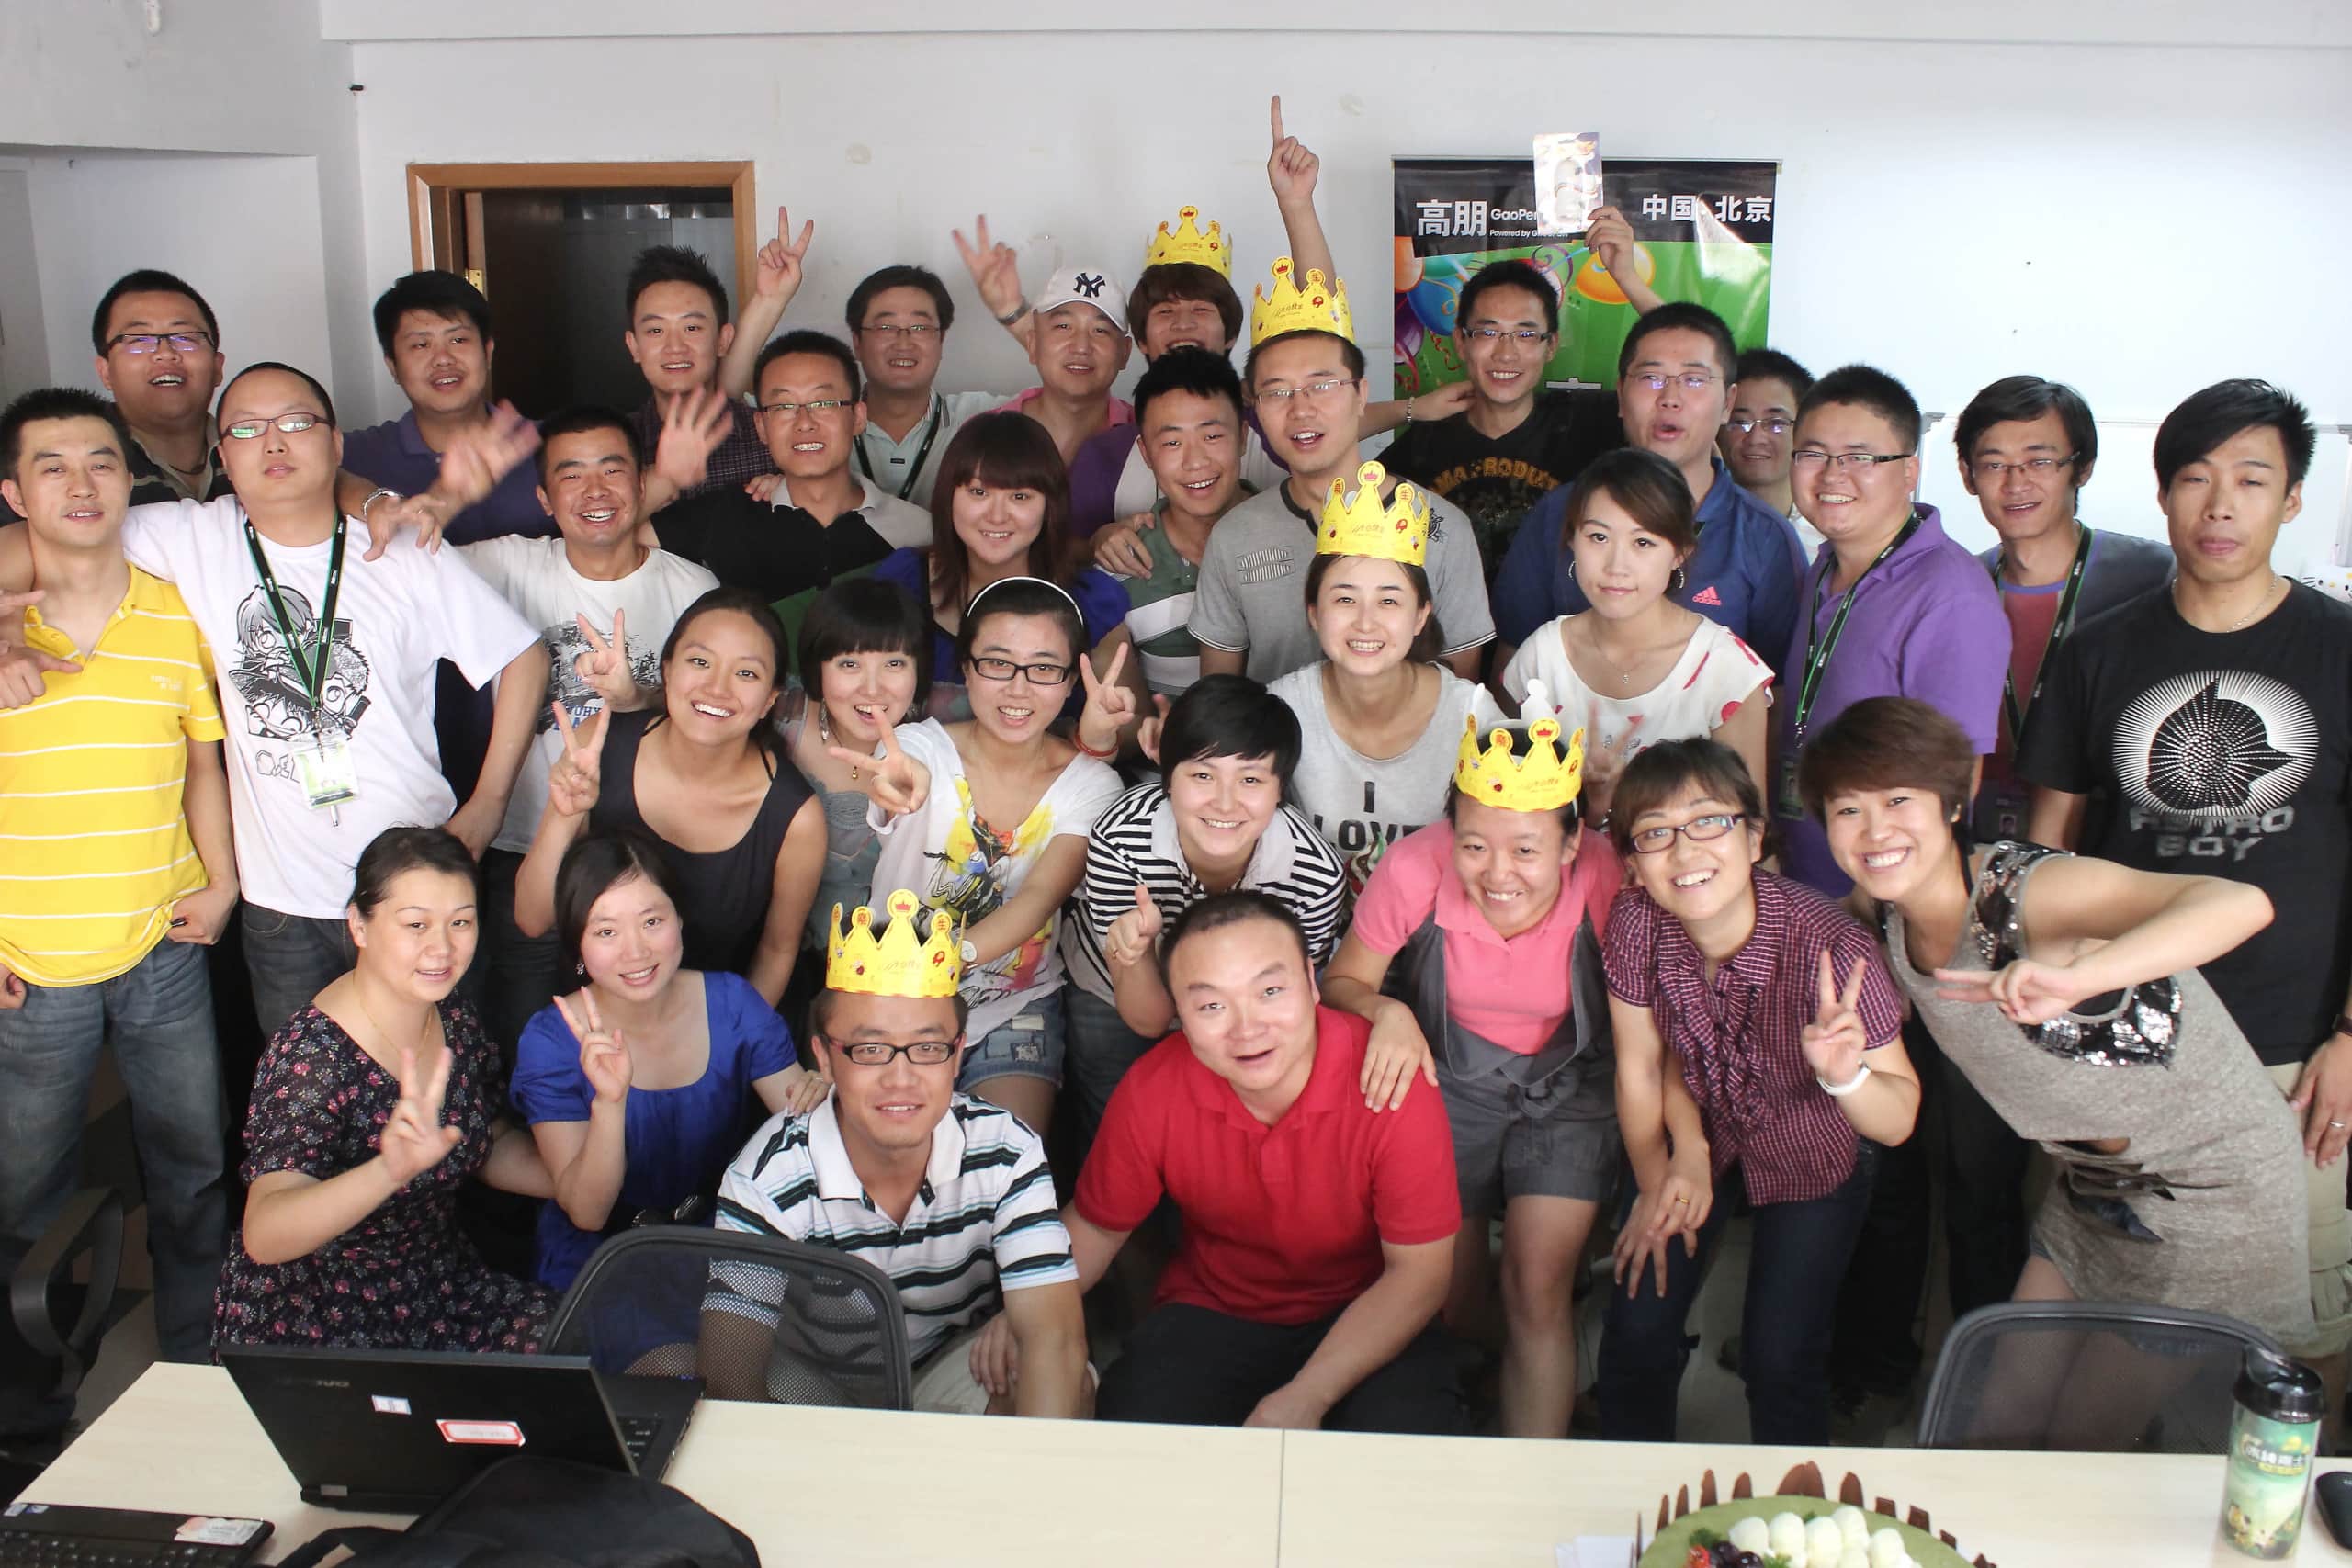 My team in Lanzhou, China, celebrating office birthdays